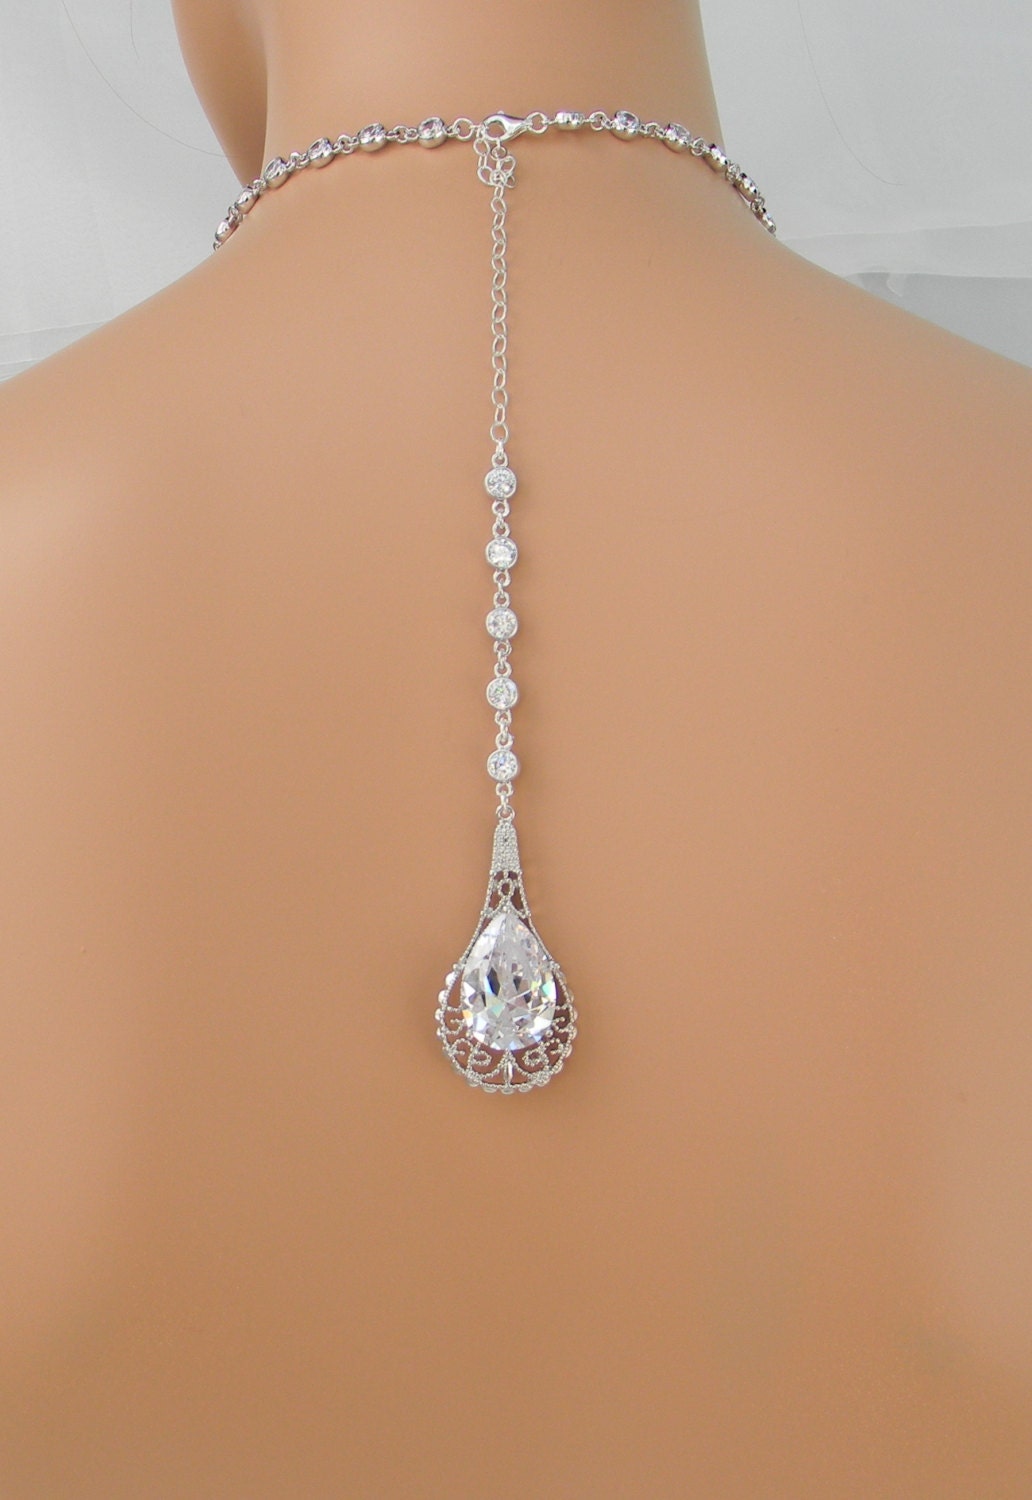 Back Drop Bridal Necklace Backdrop Wedding necklace Crystal